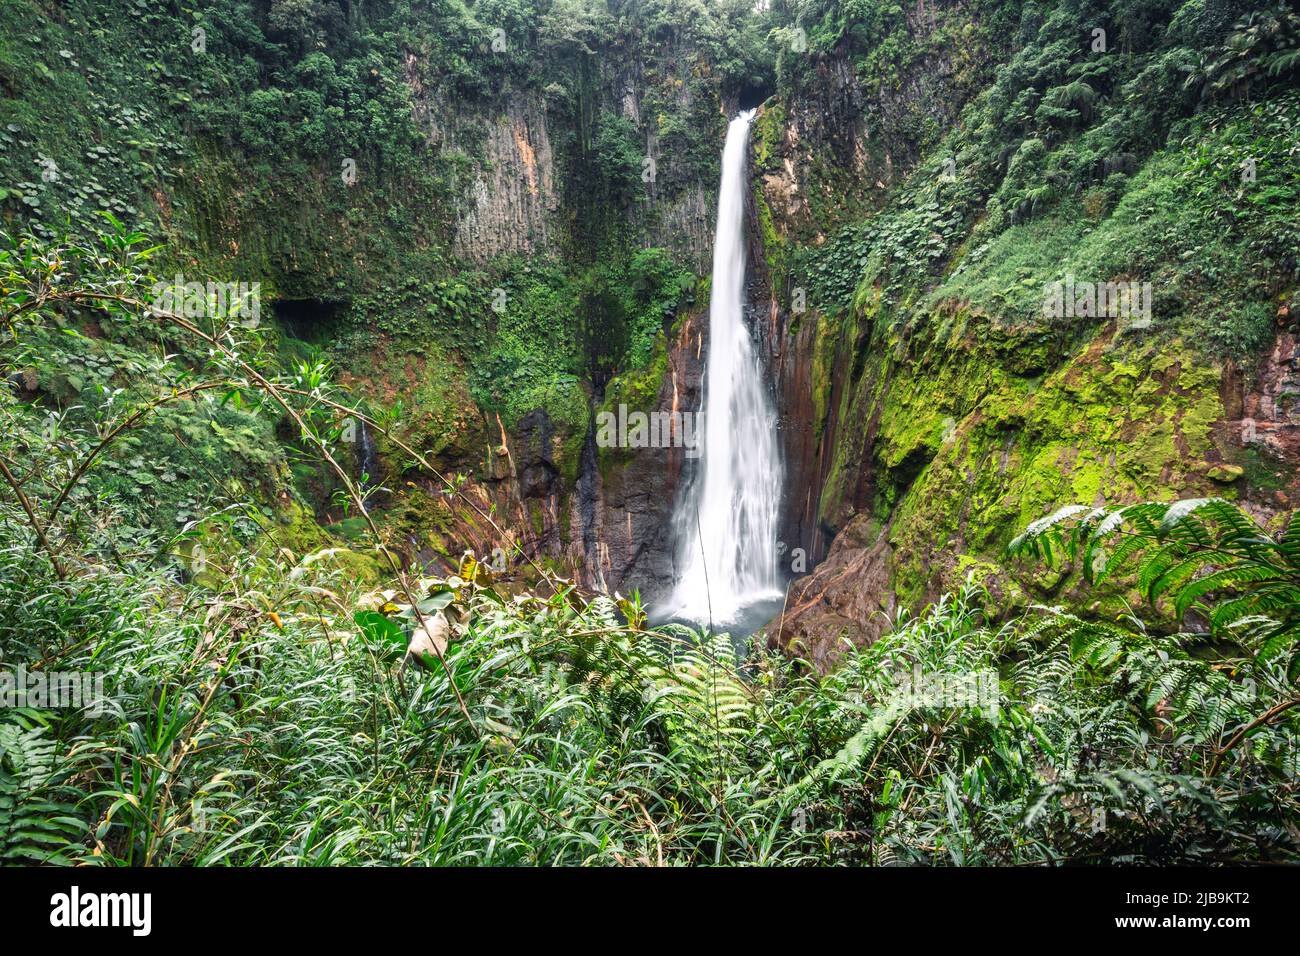 Catarata del Toro, wild waterfall in Costa Rica Stock Photo